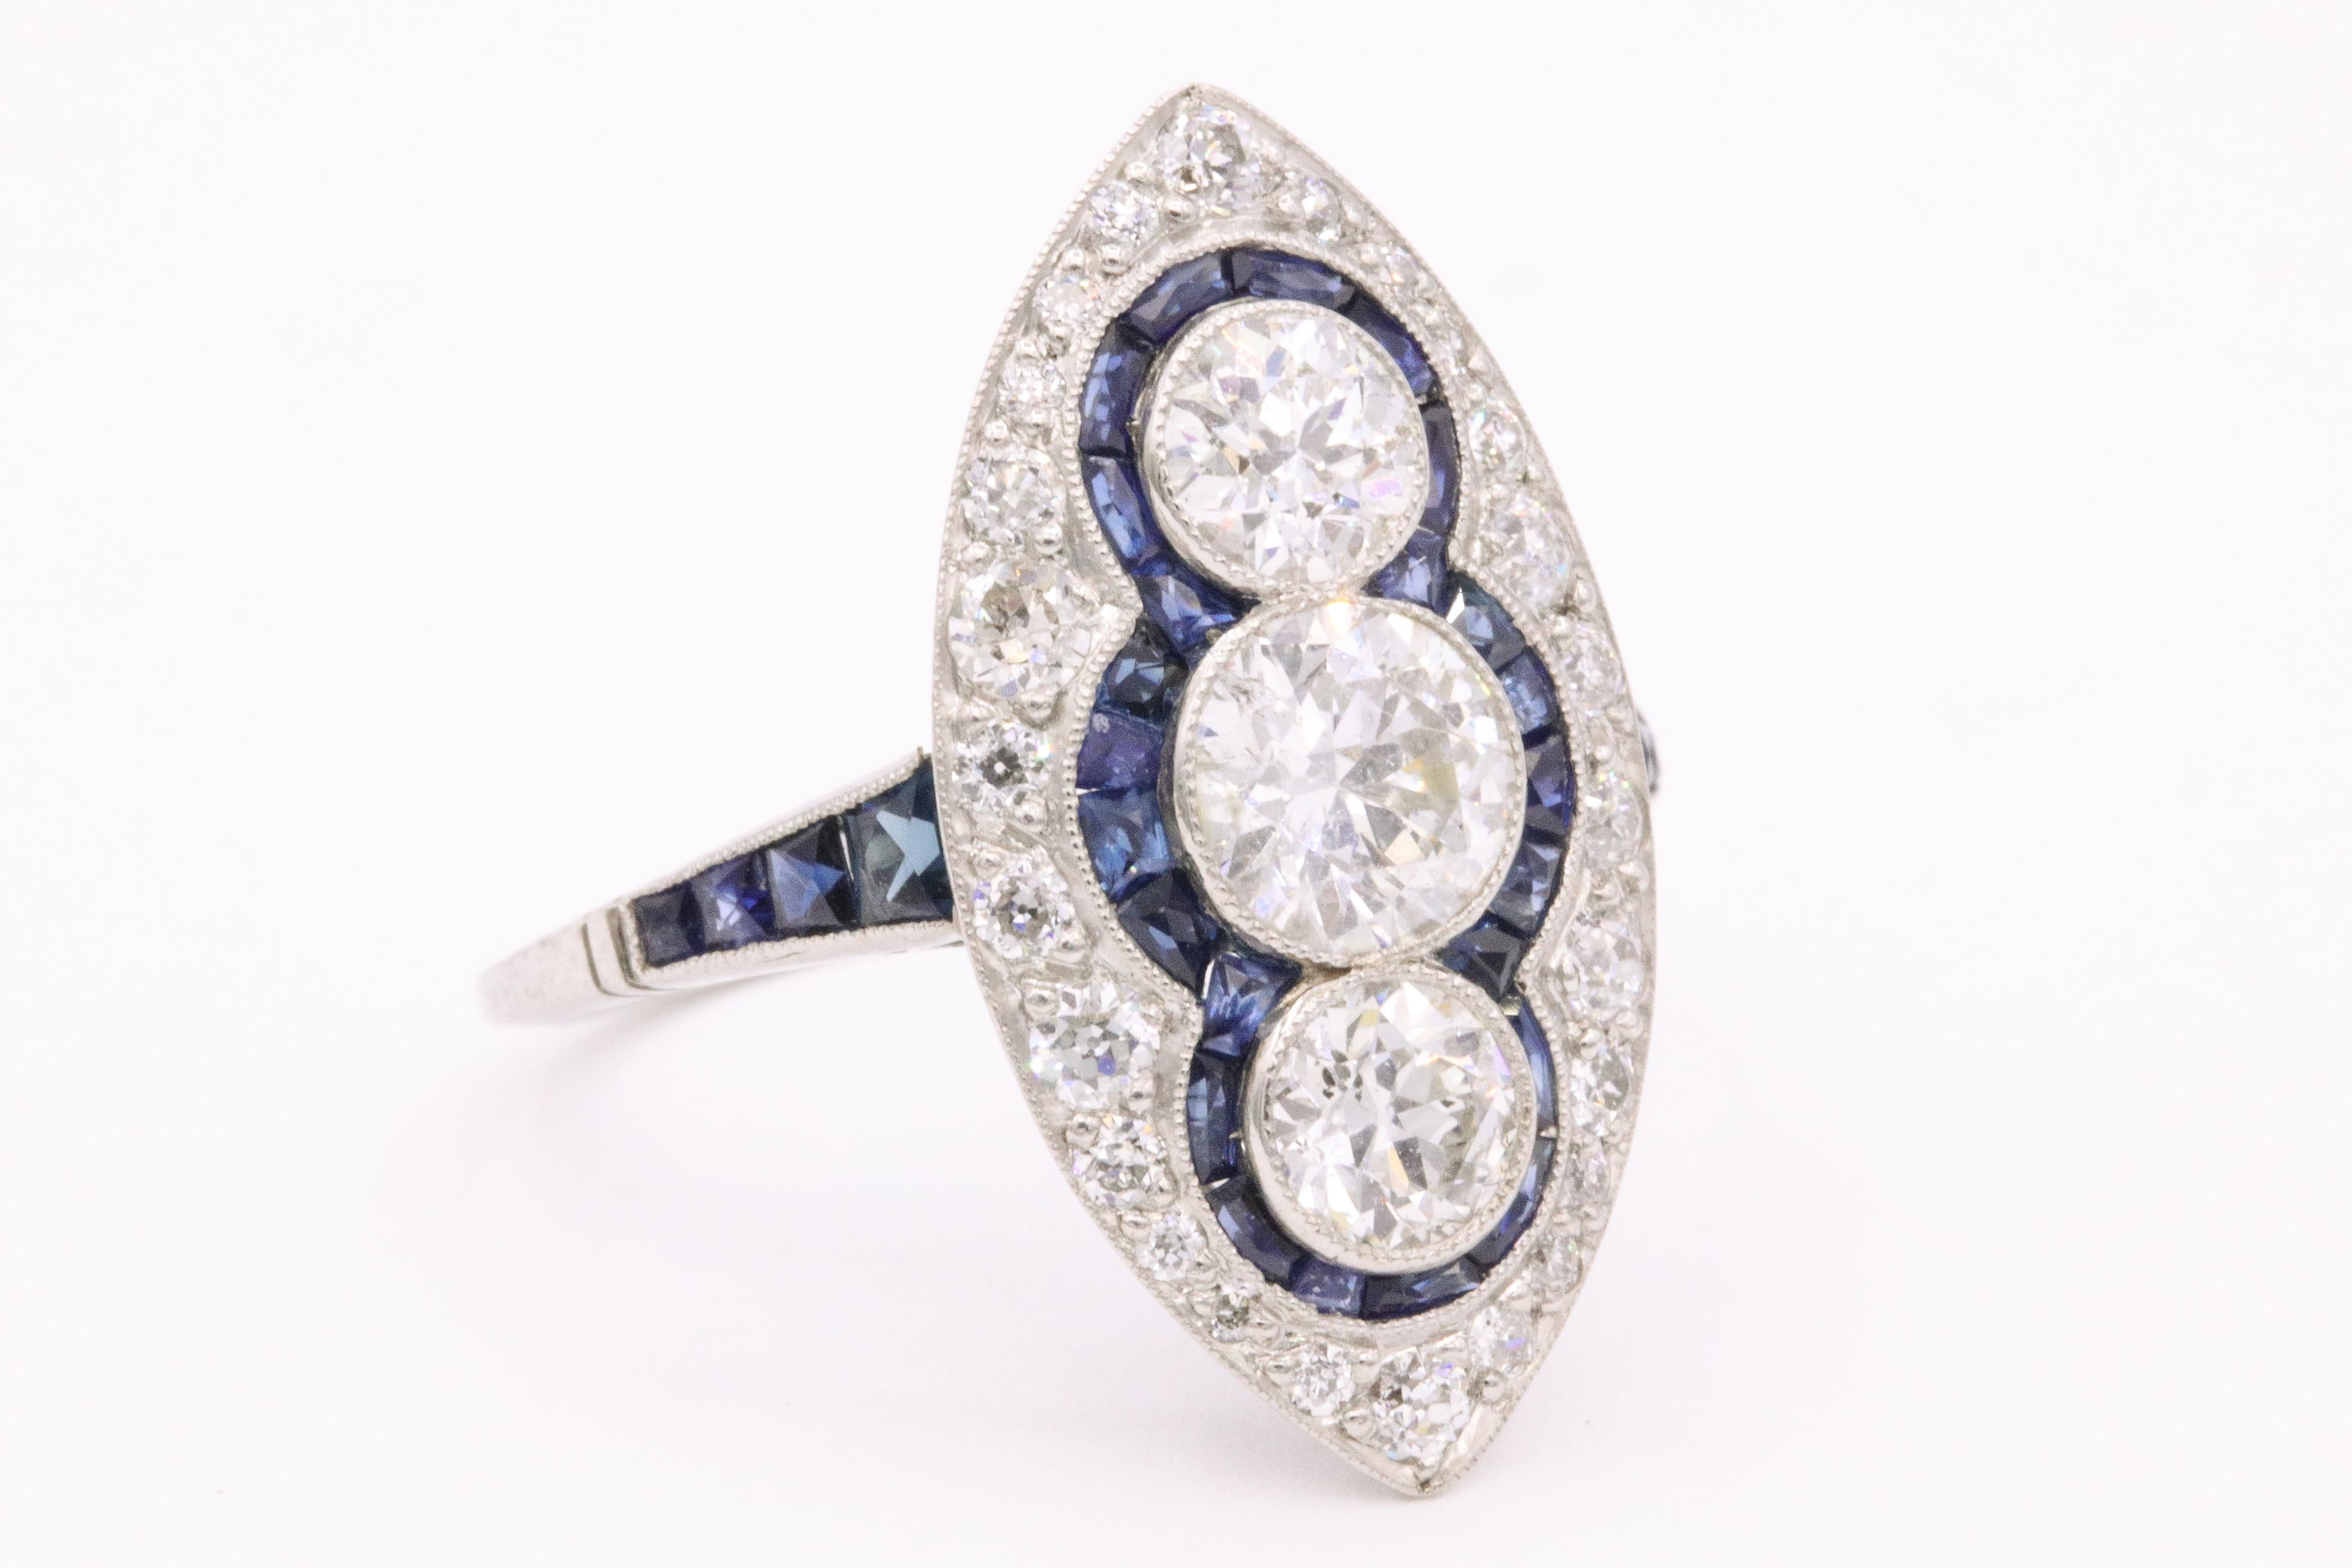 Von Art Deco inspirierter Platinring mit drei runden Diamanten von ca. 2 Karat, flankiert von blauen Saphiren von ca. 1 Karat. Sieht toll aus am Finger!

Der Ring ist 1 Zoll lang und 1/2 Zoll breit.   